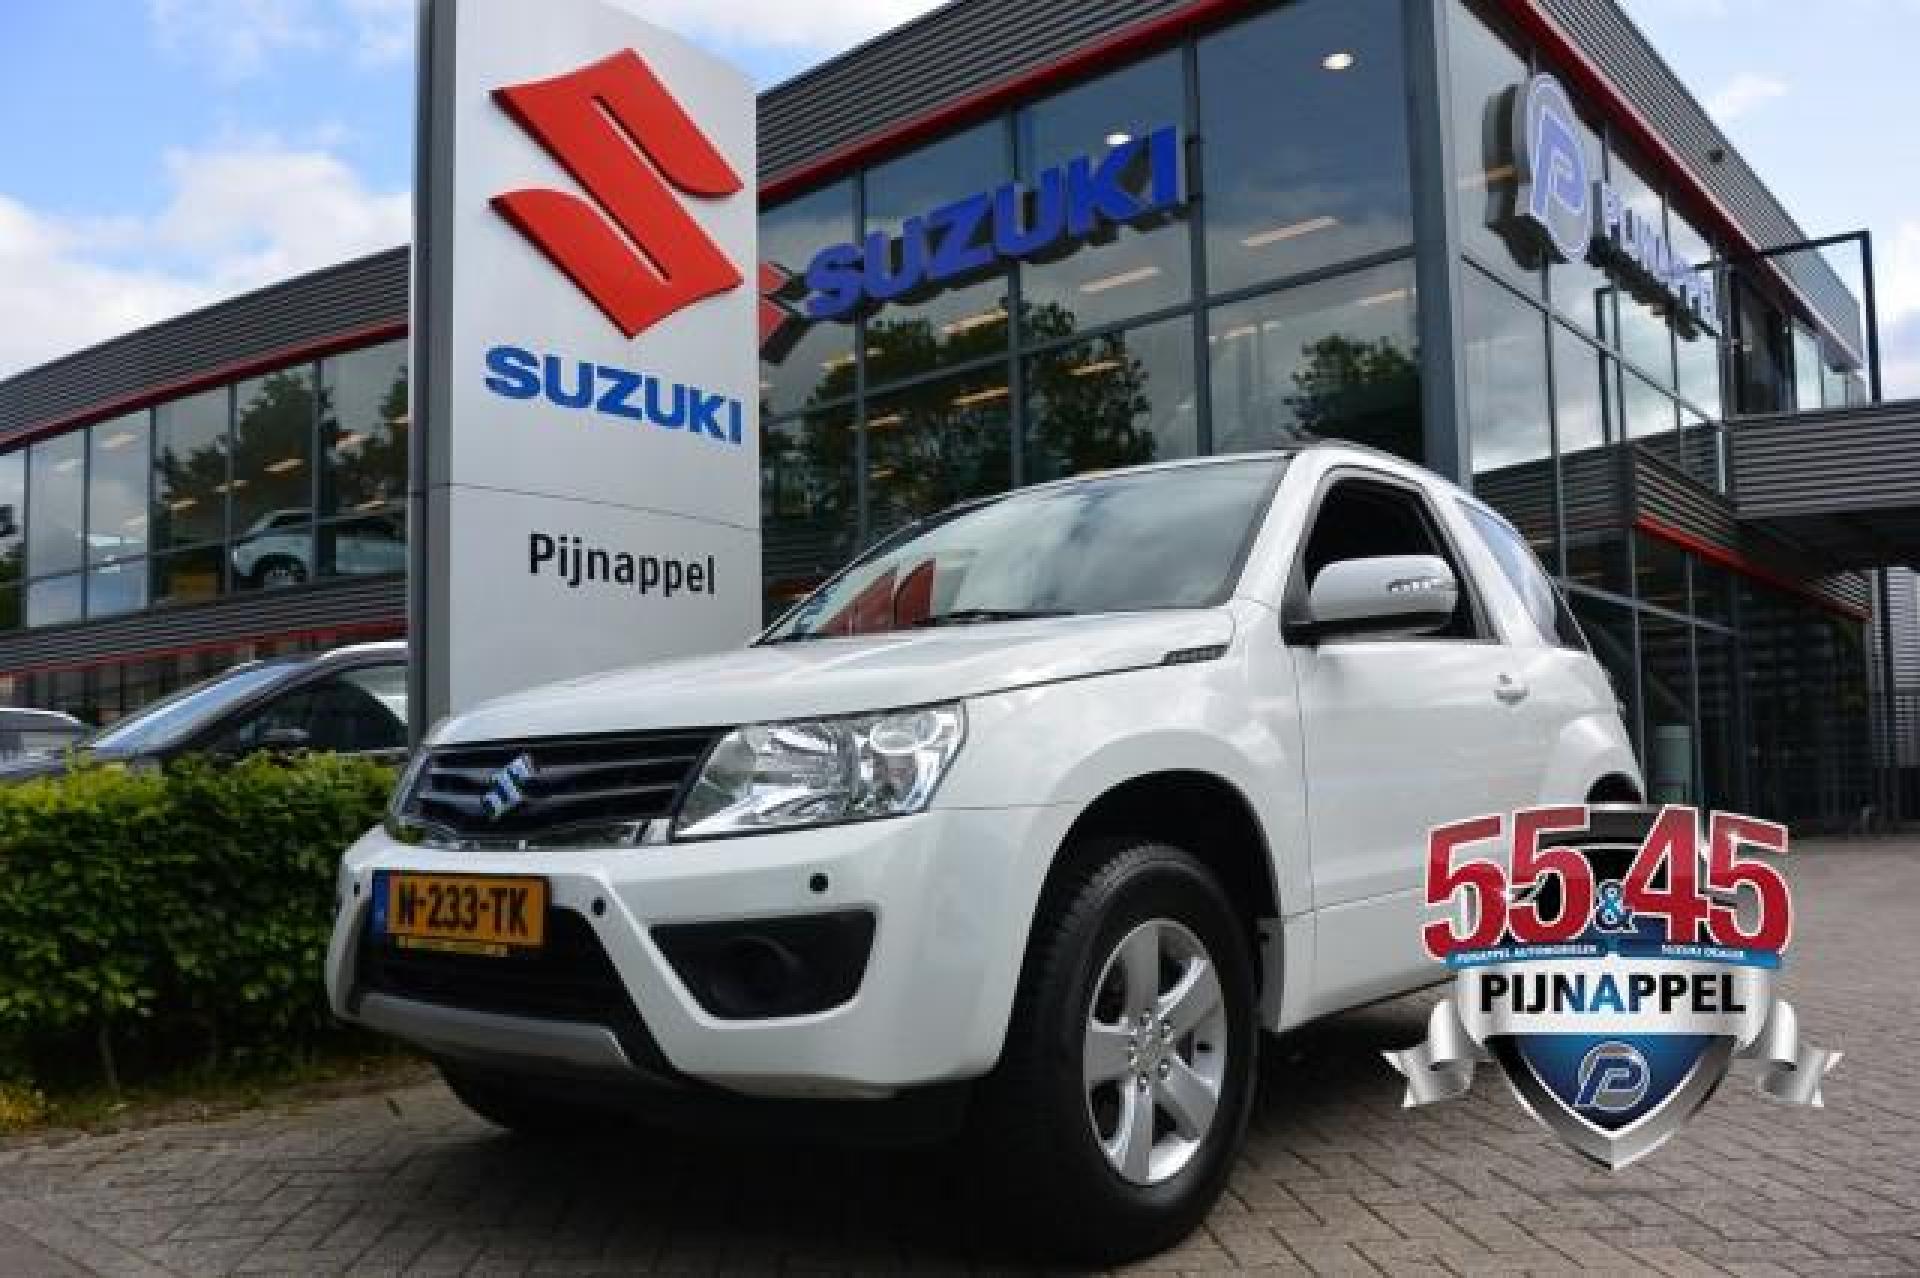 Tweedehands Suzuki occasion kopen